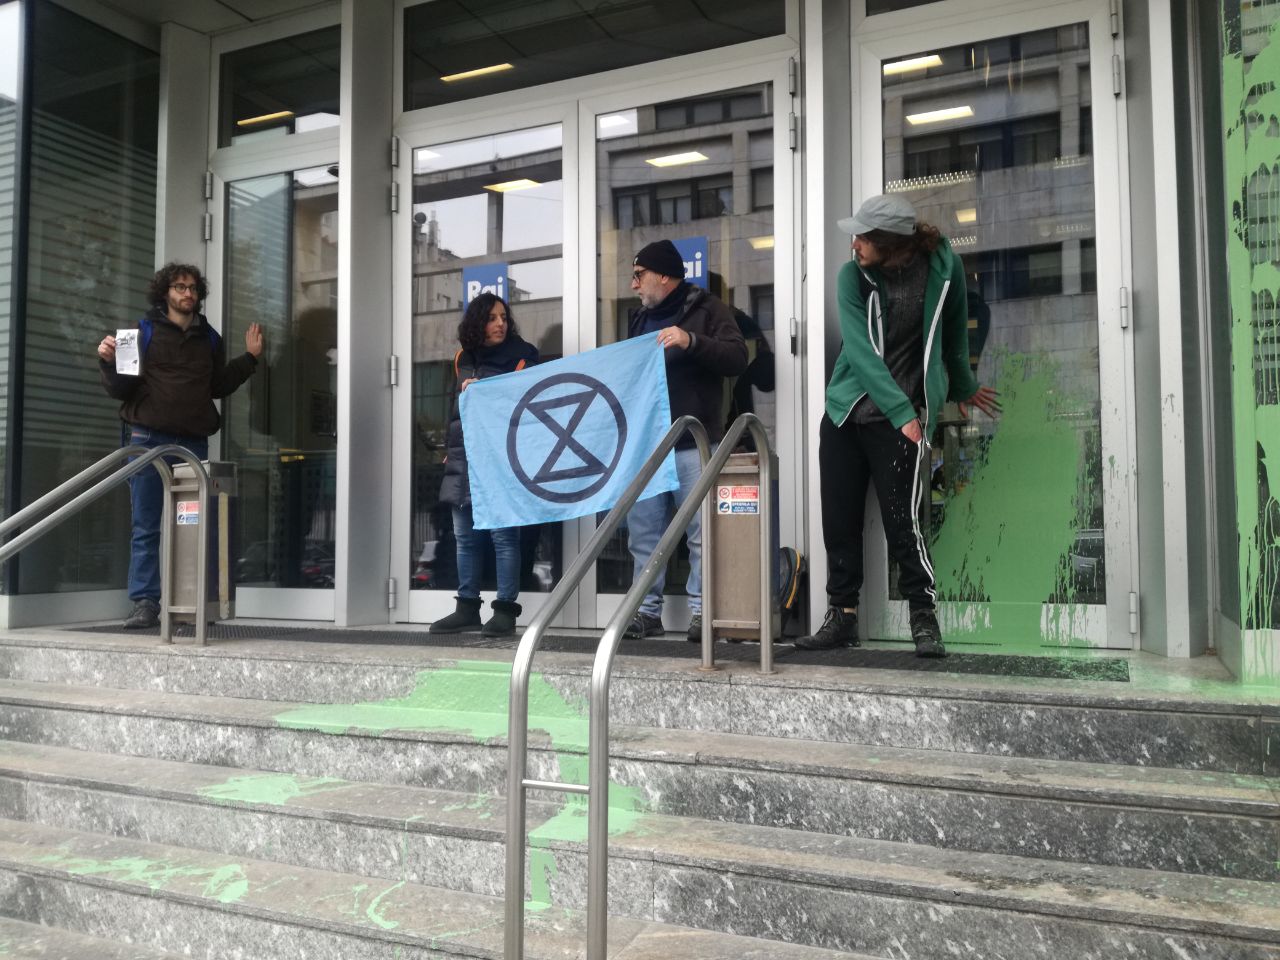 Milano, vernice verde sulla sede Rai. Extinction Rebellion: «Il collasso climatico sia al centro dell’informazione» – Il video